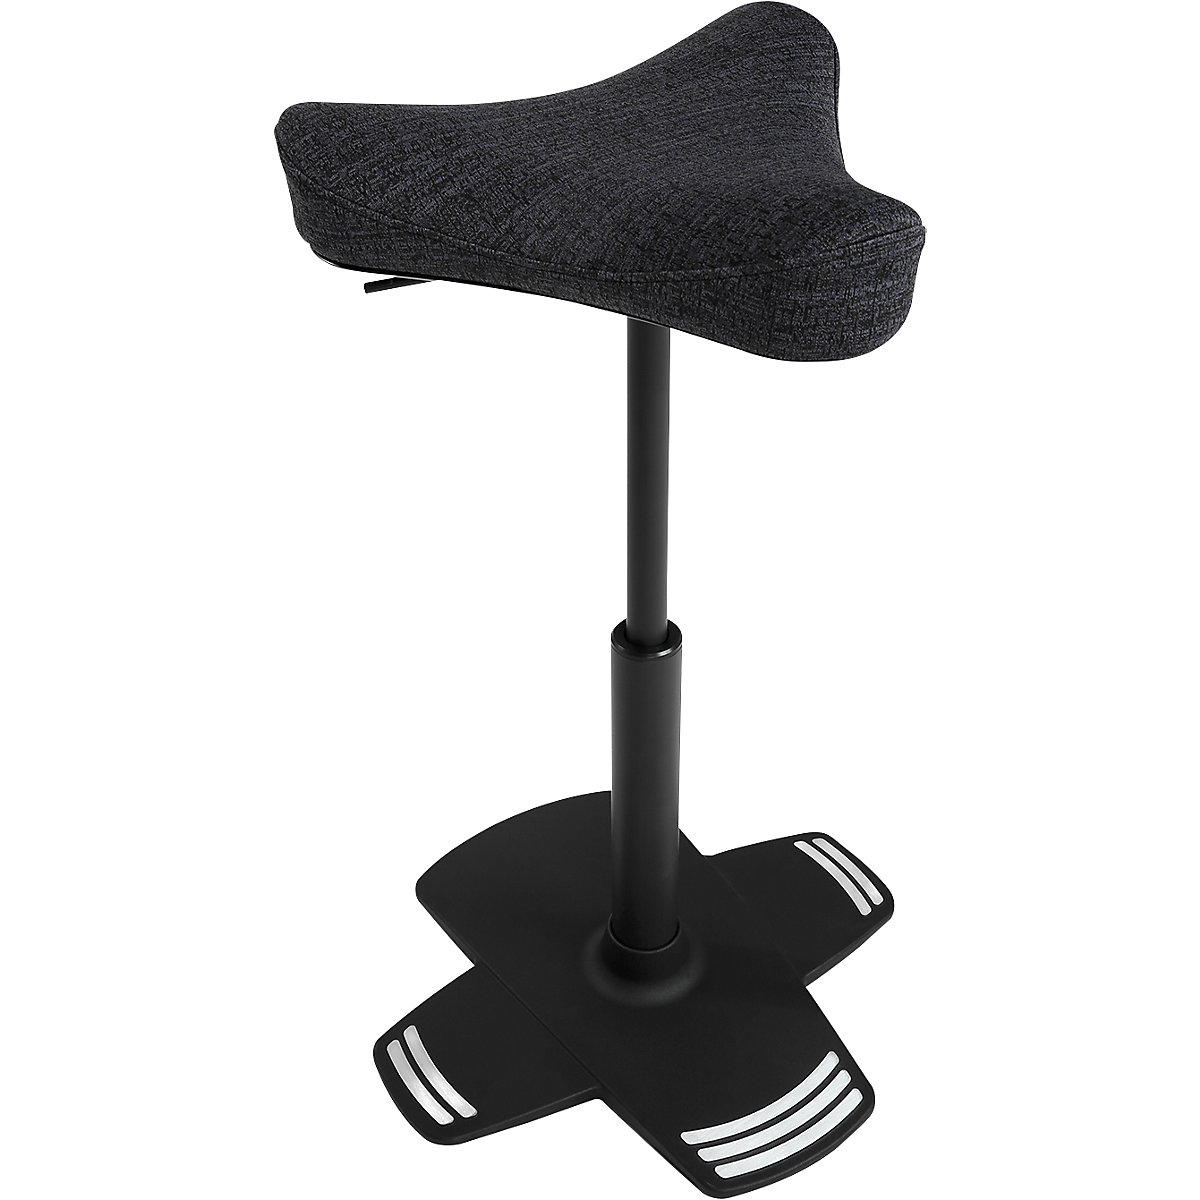 Scaun de sprijin SITNESS FALCON – Topstar, cu șezut în formă de șea, cu formă ergonomică, tapițerie neagră-7